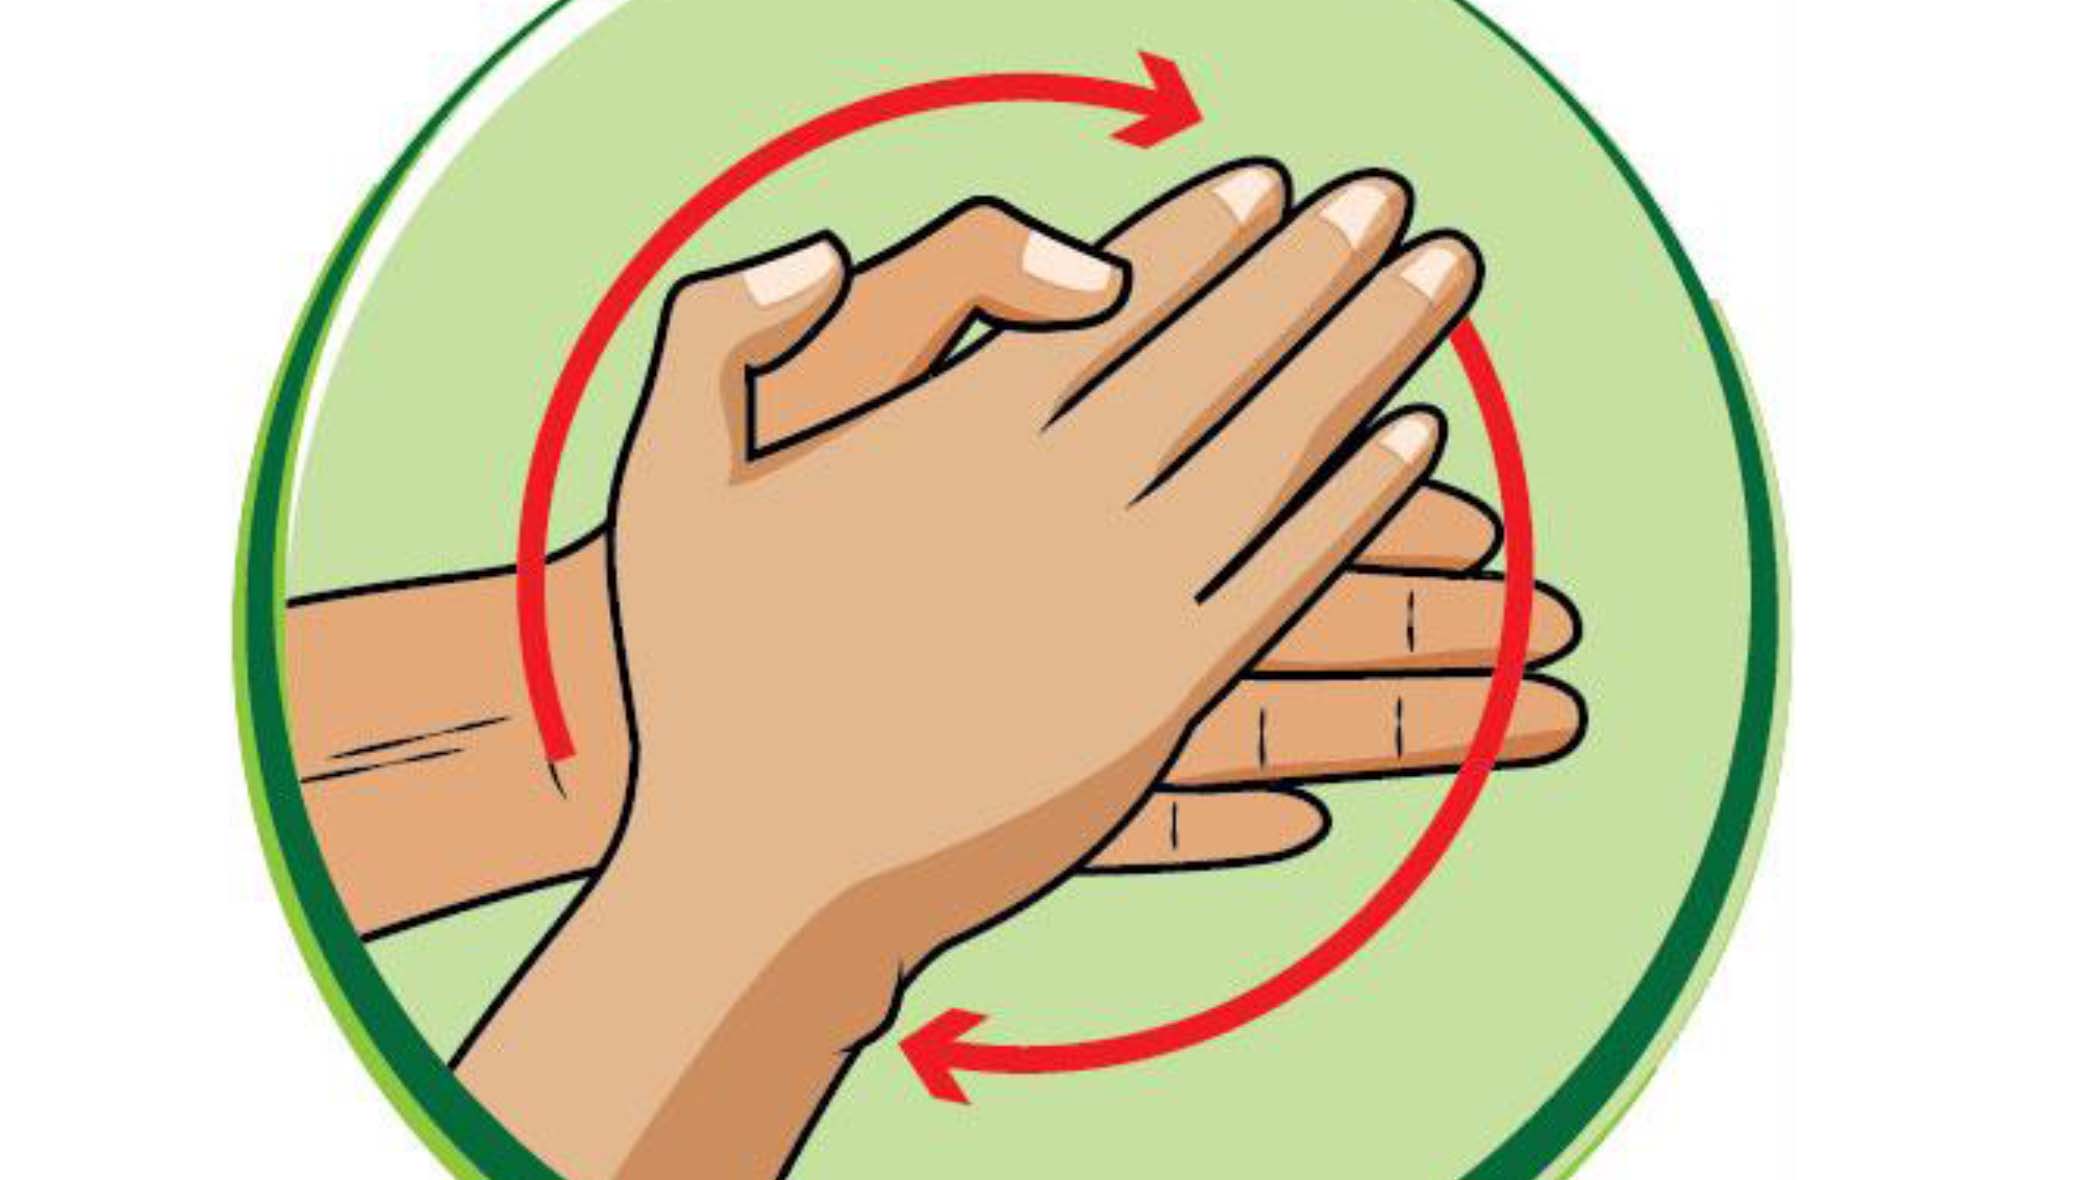 Rửa tay thường xuyên để ngăn chặn sự lây lan của vi khuẩn và vi rút.